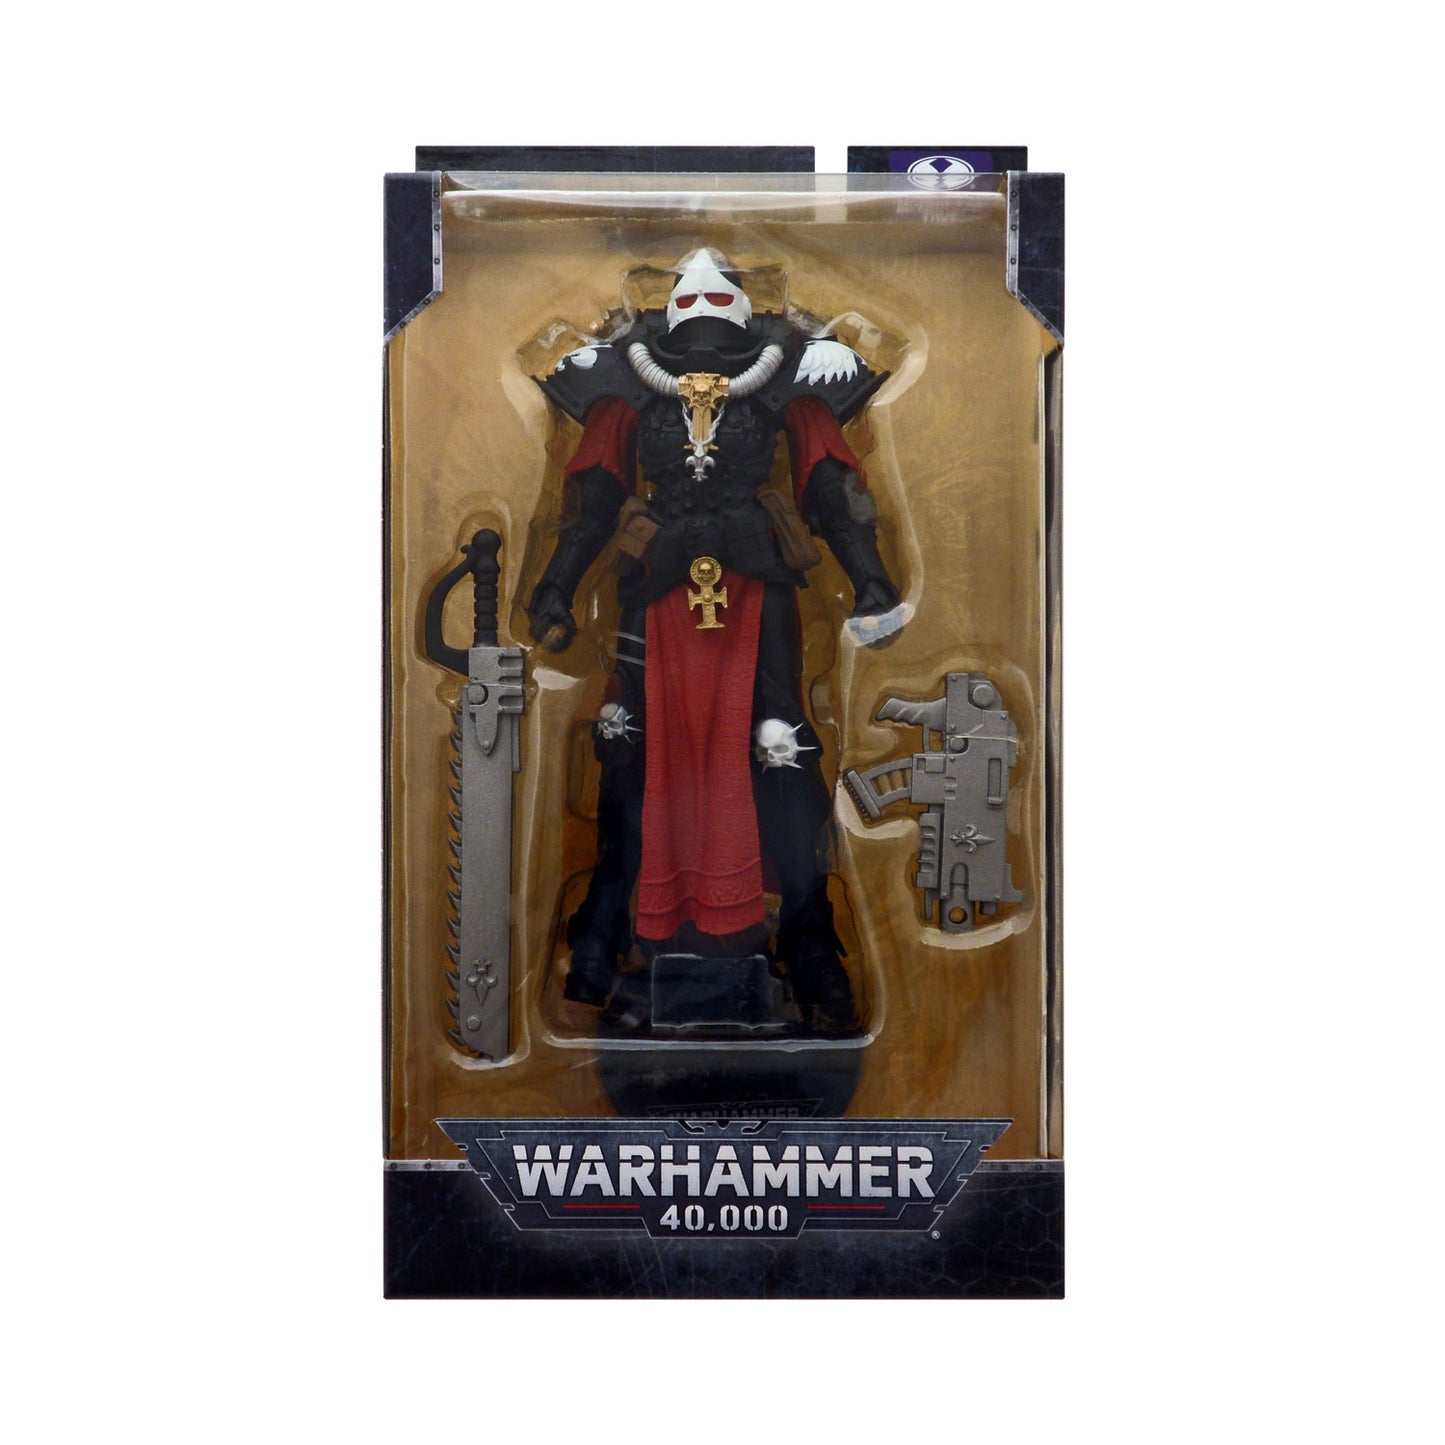 McFarlane Toys Warhammer 40,000 Adepta Sororitas Battle Sister